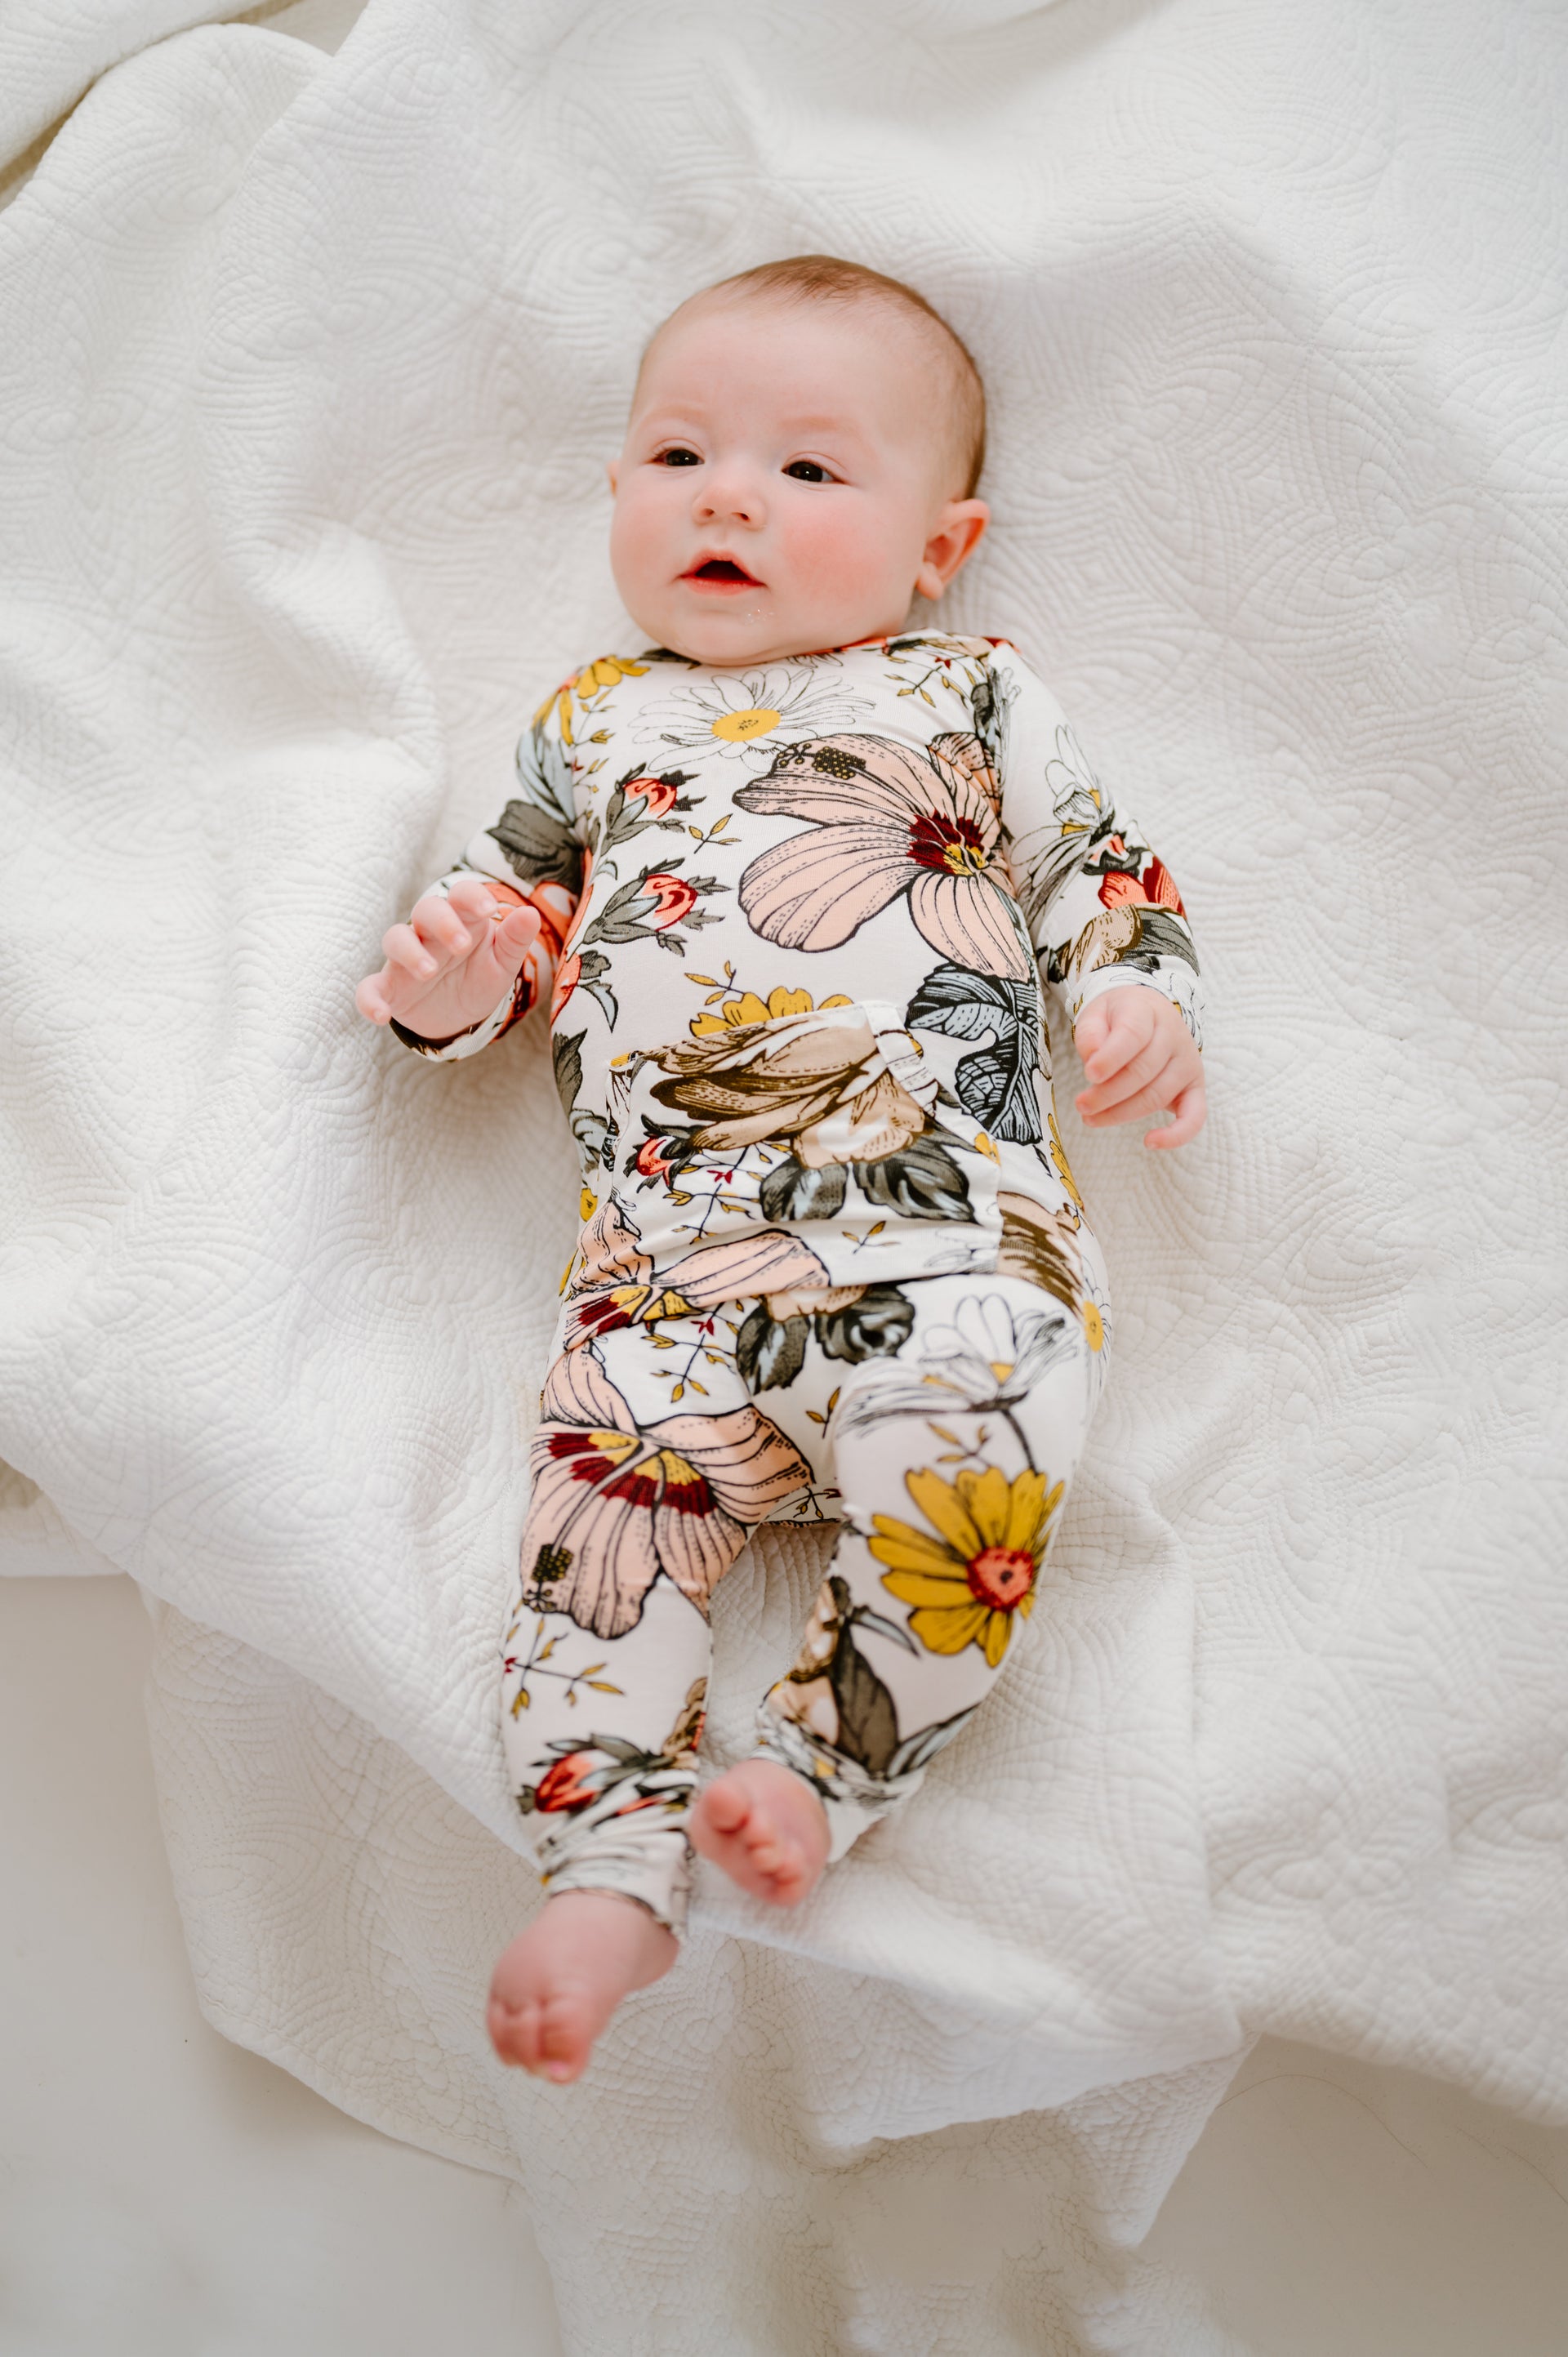 Baby wearing Finley Romper in vintage floral